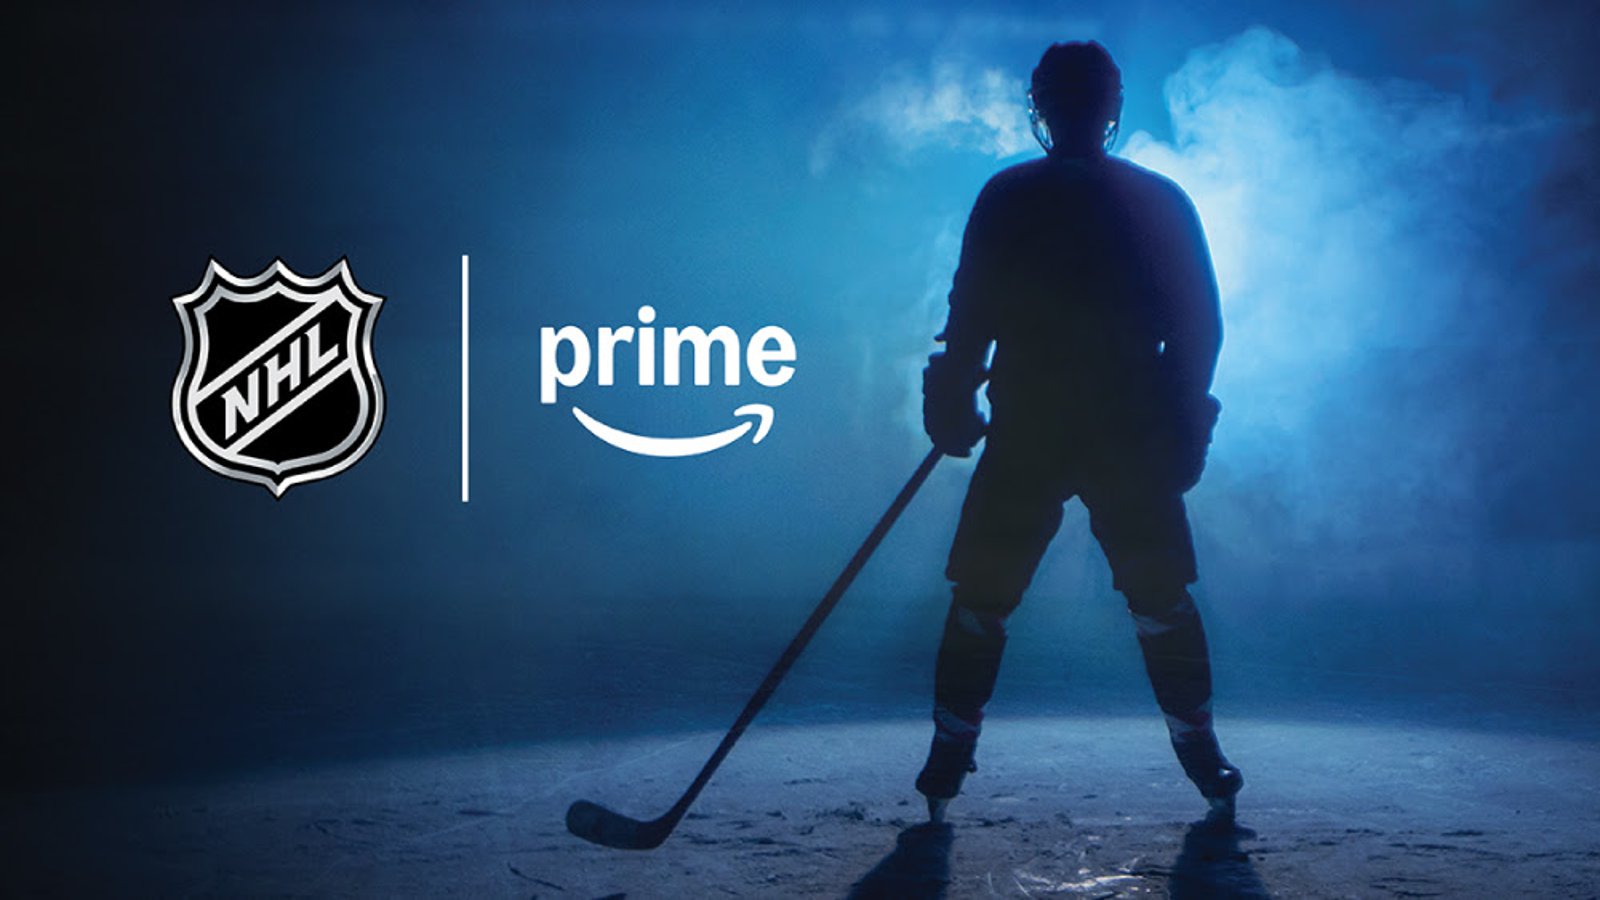 La LNH annonce une entente pour diffuser ses matchs sur Amazon Prime